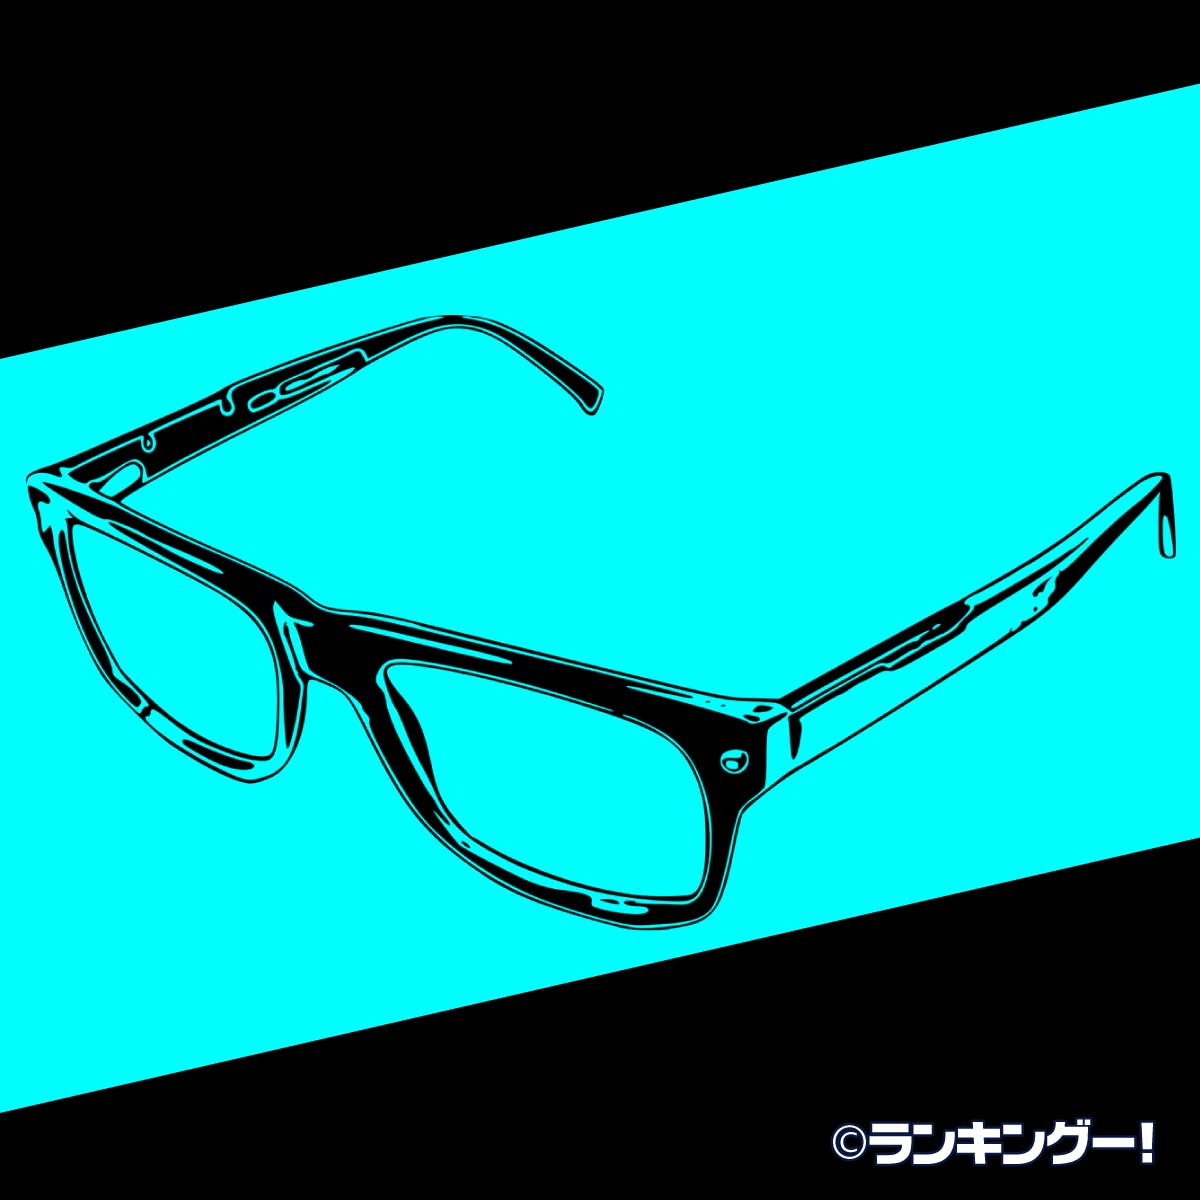 アニメの眼鏡キャラクターイケメンランキング 二次元メガネ男子 16 位 ランキングー